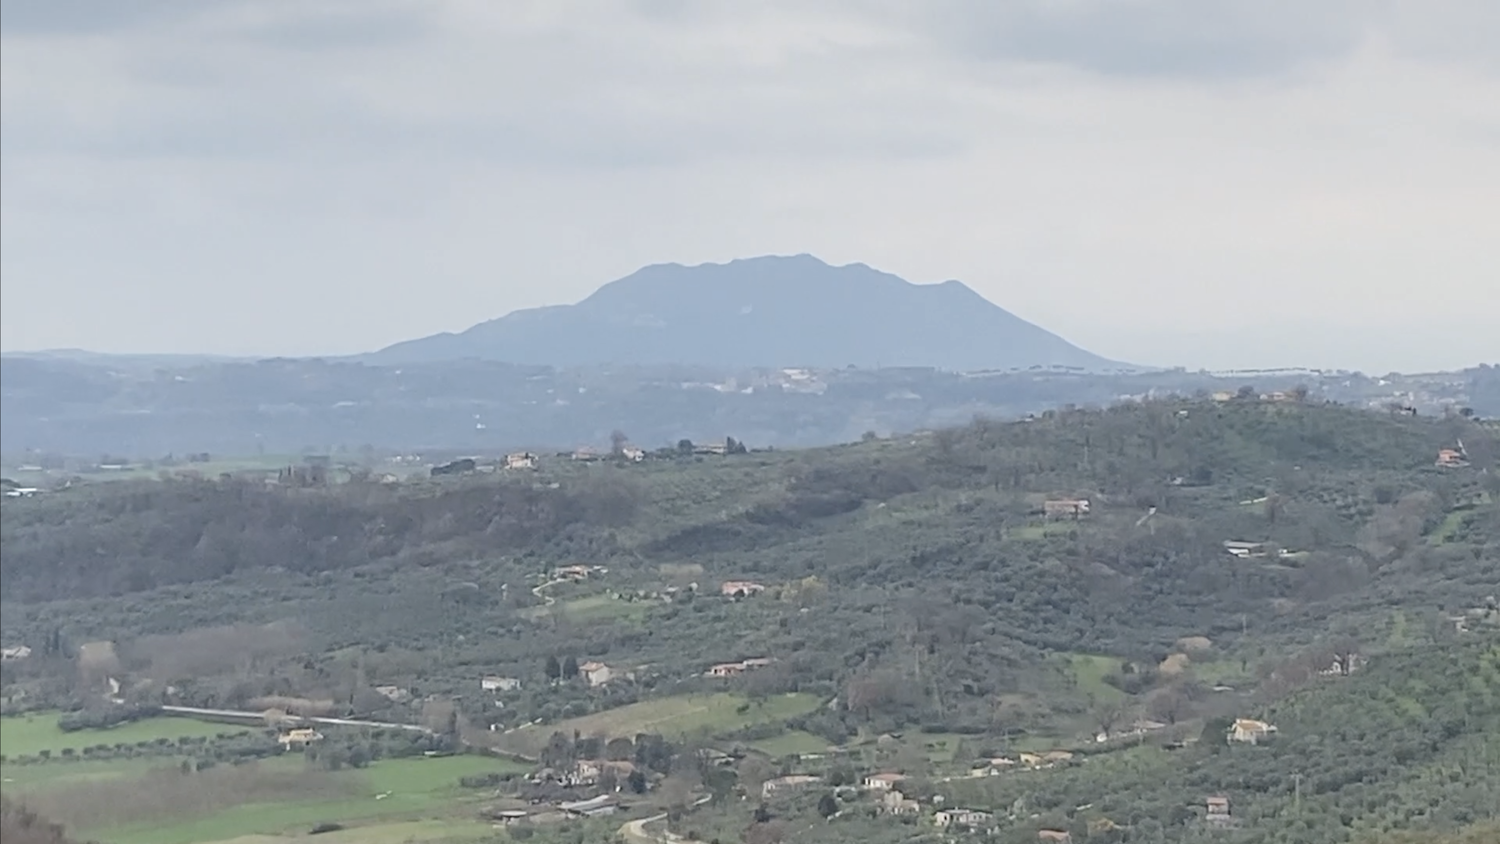 Sulla riva sinistra del fiume Tevere, oltre ai Monti Sabini, si estende il territorio della Sabina con il tipico paesaggio di colline ricoperte da  uliveti secolari